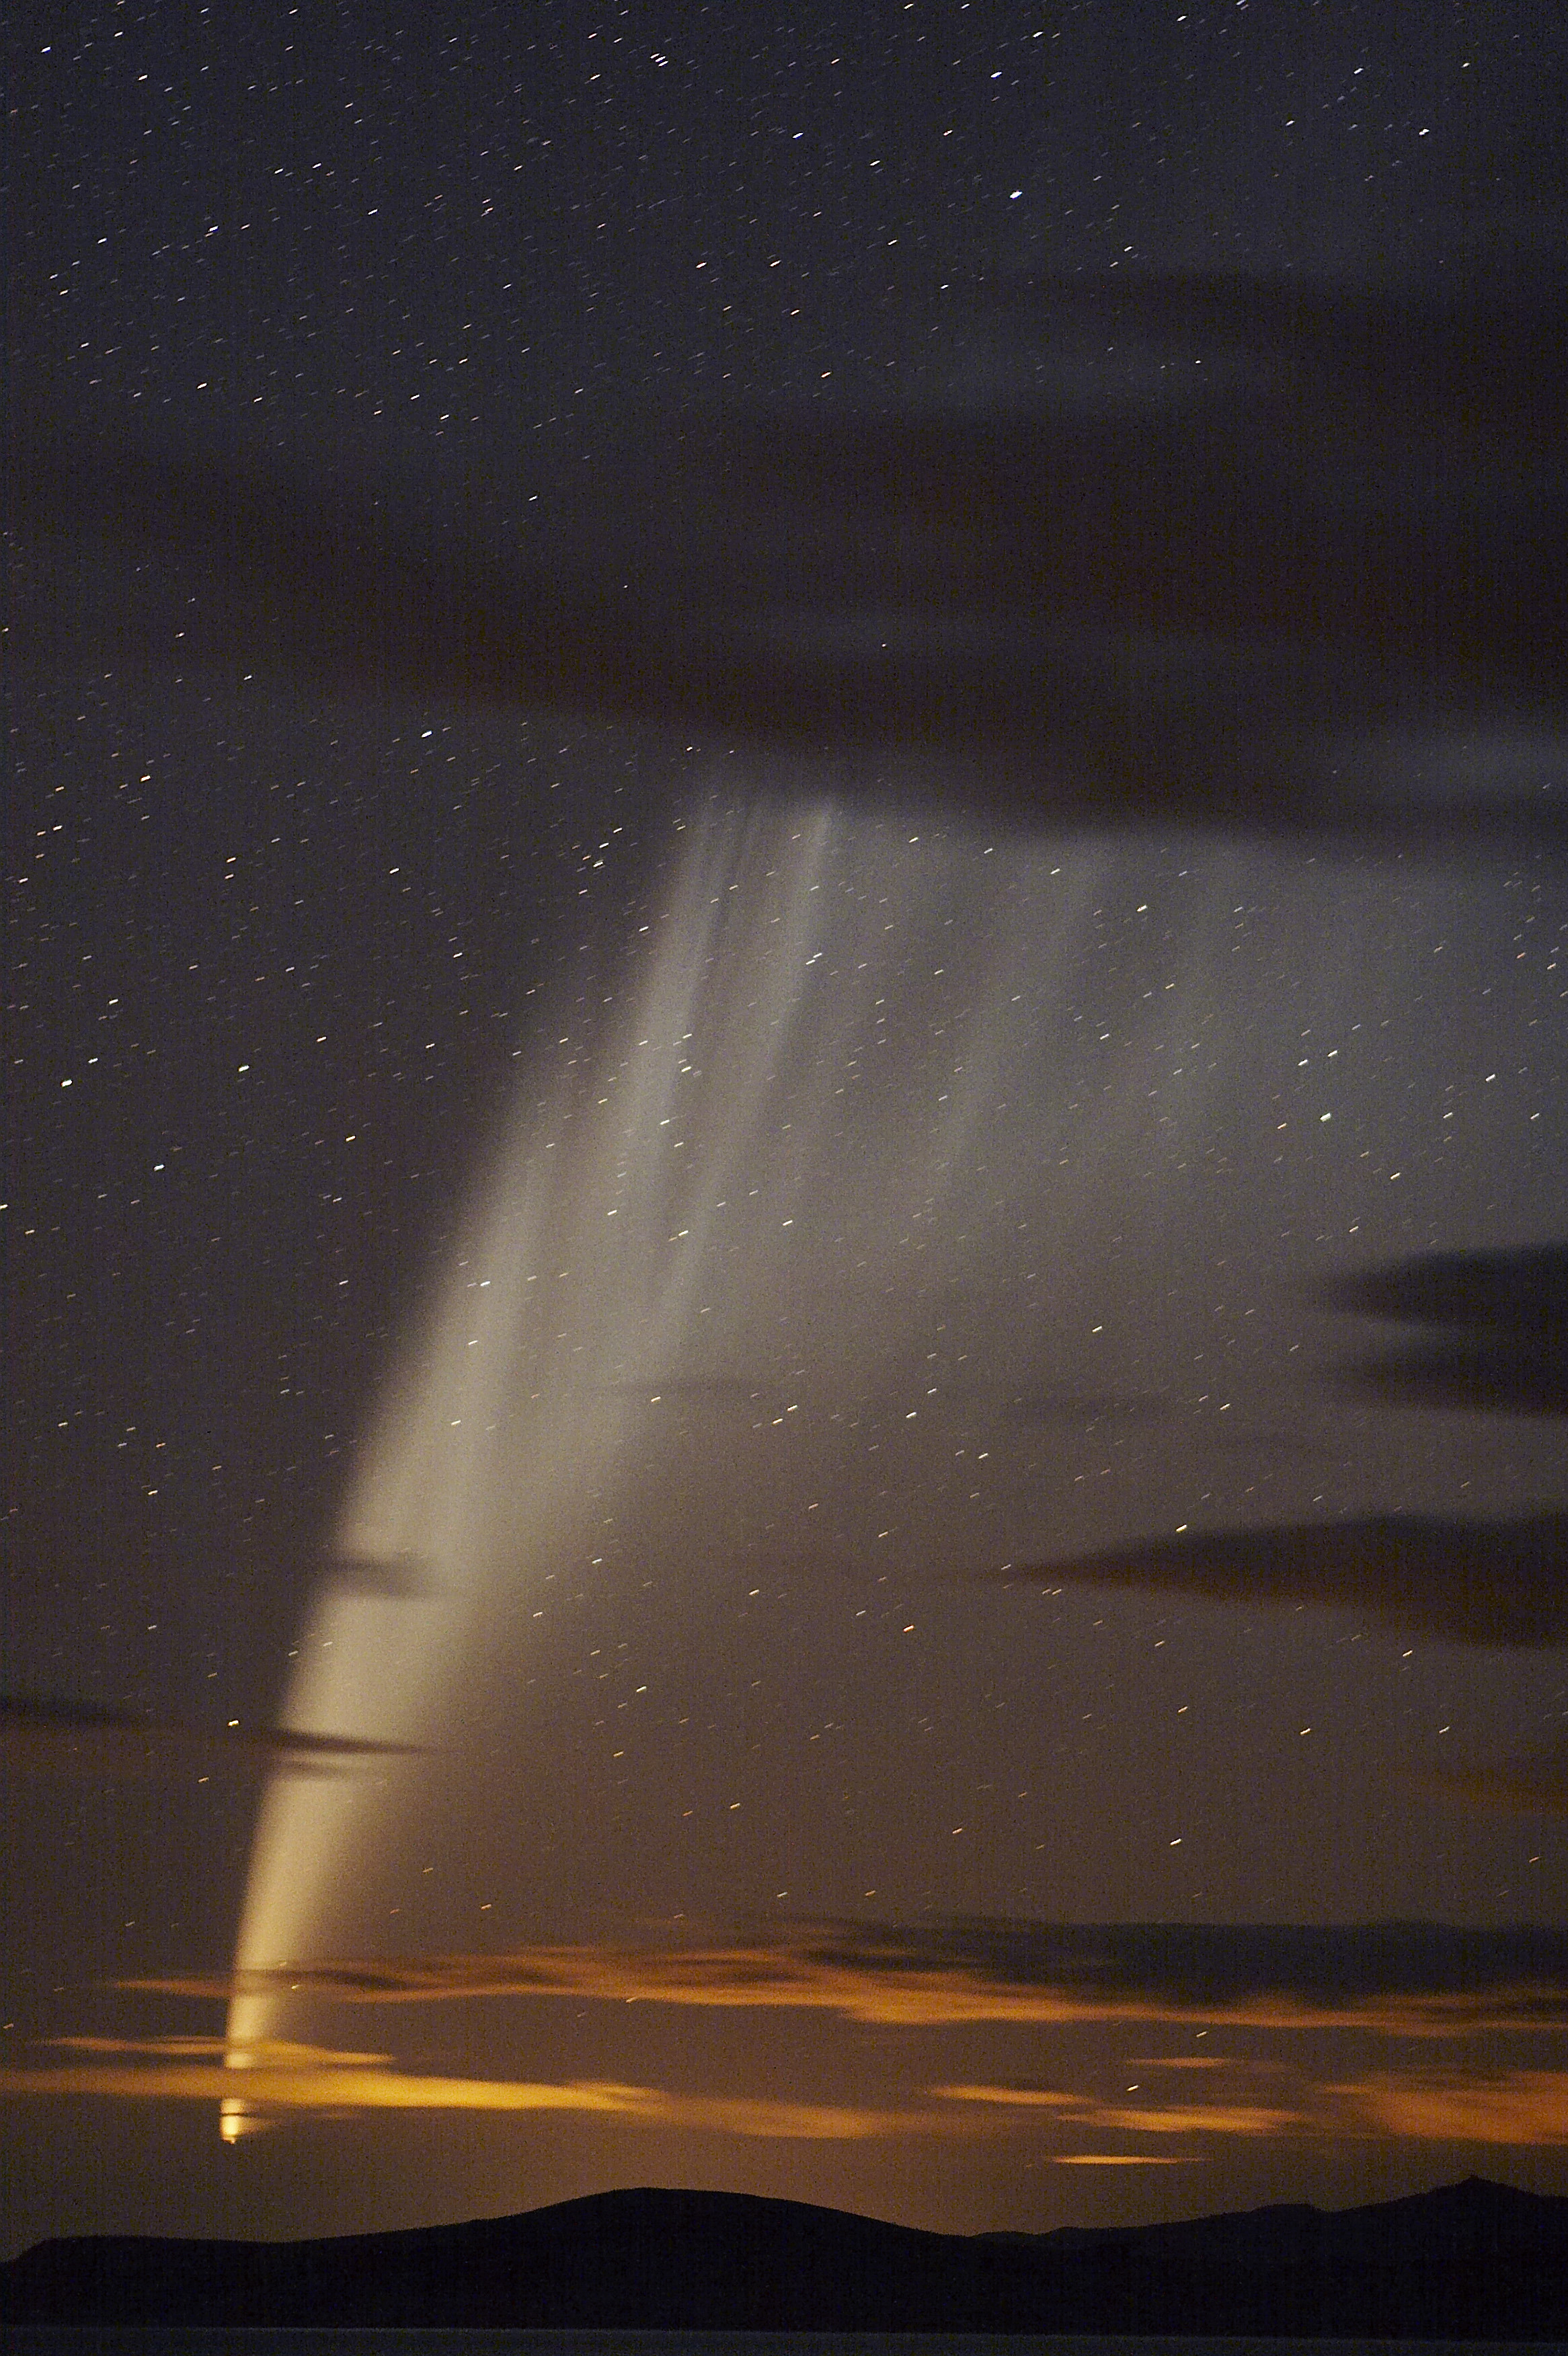 C/2006 P1, Comet McNaught